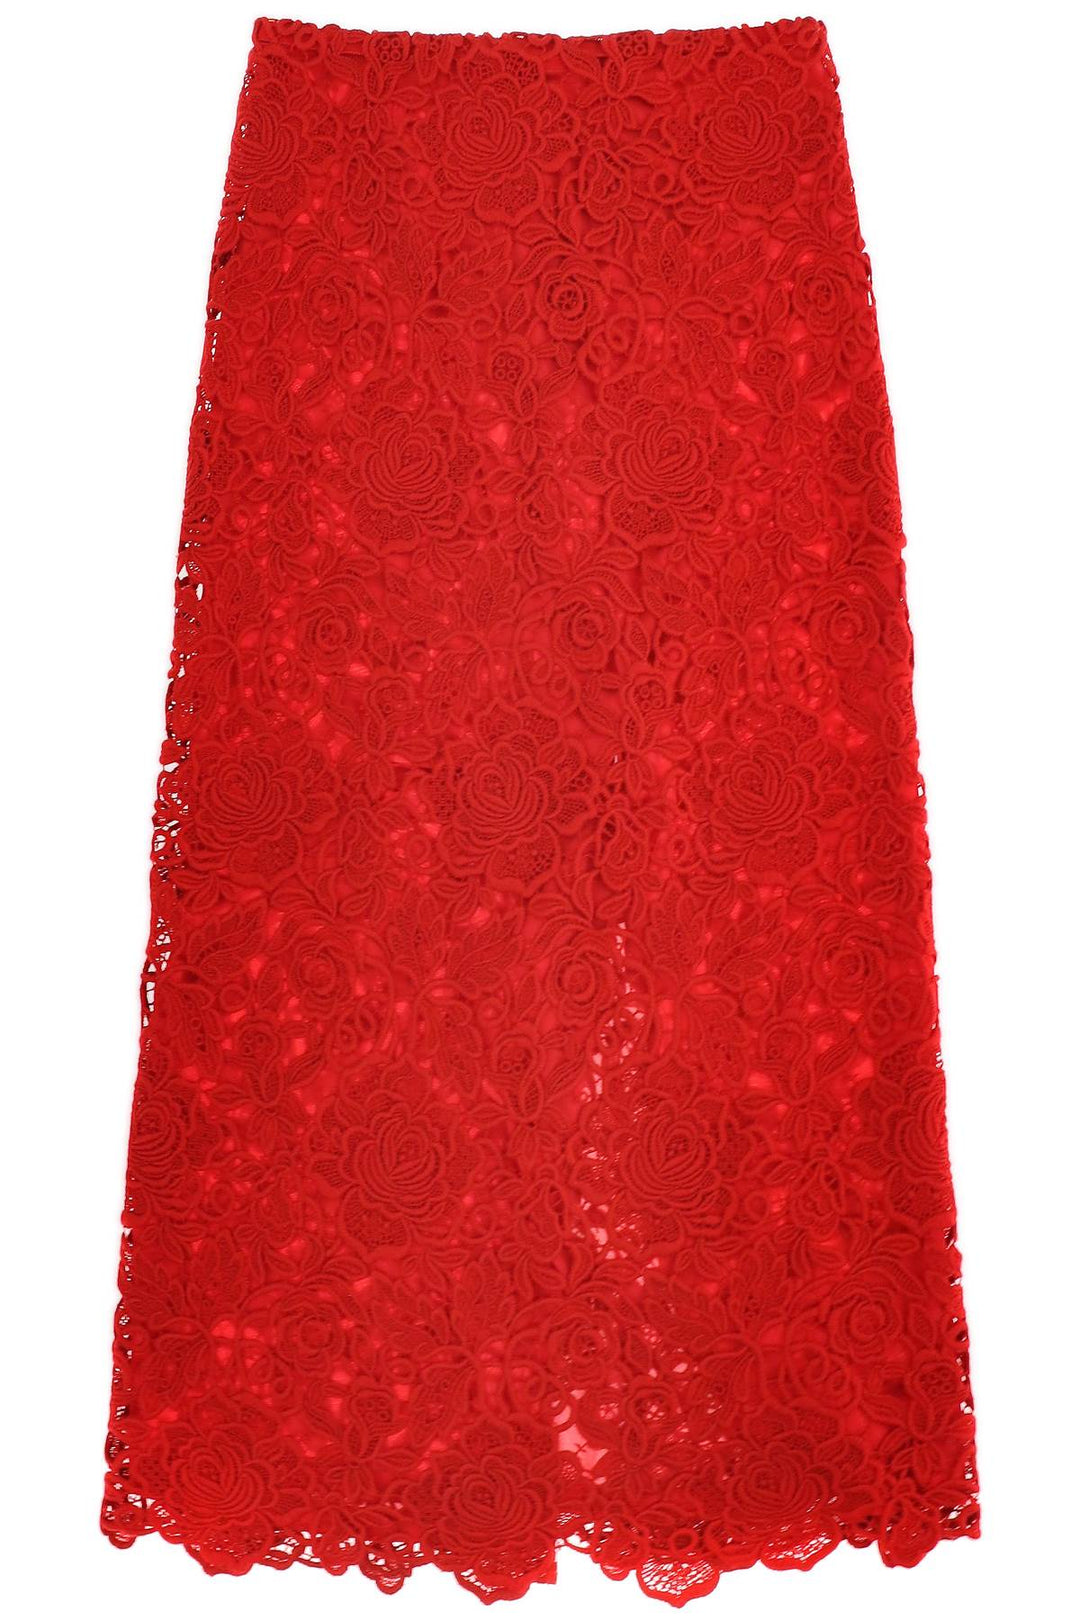 Valentino Garavani Floral Guipure Lace Pencil Skirt   Rosso